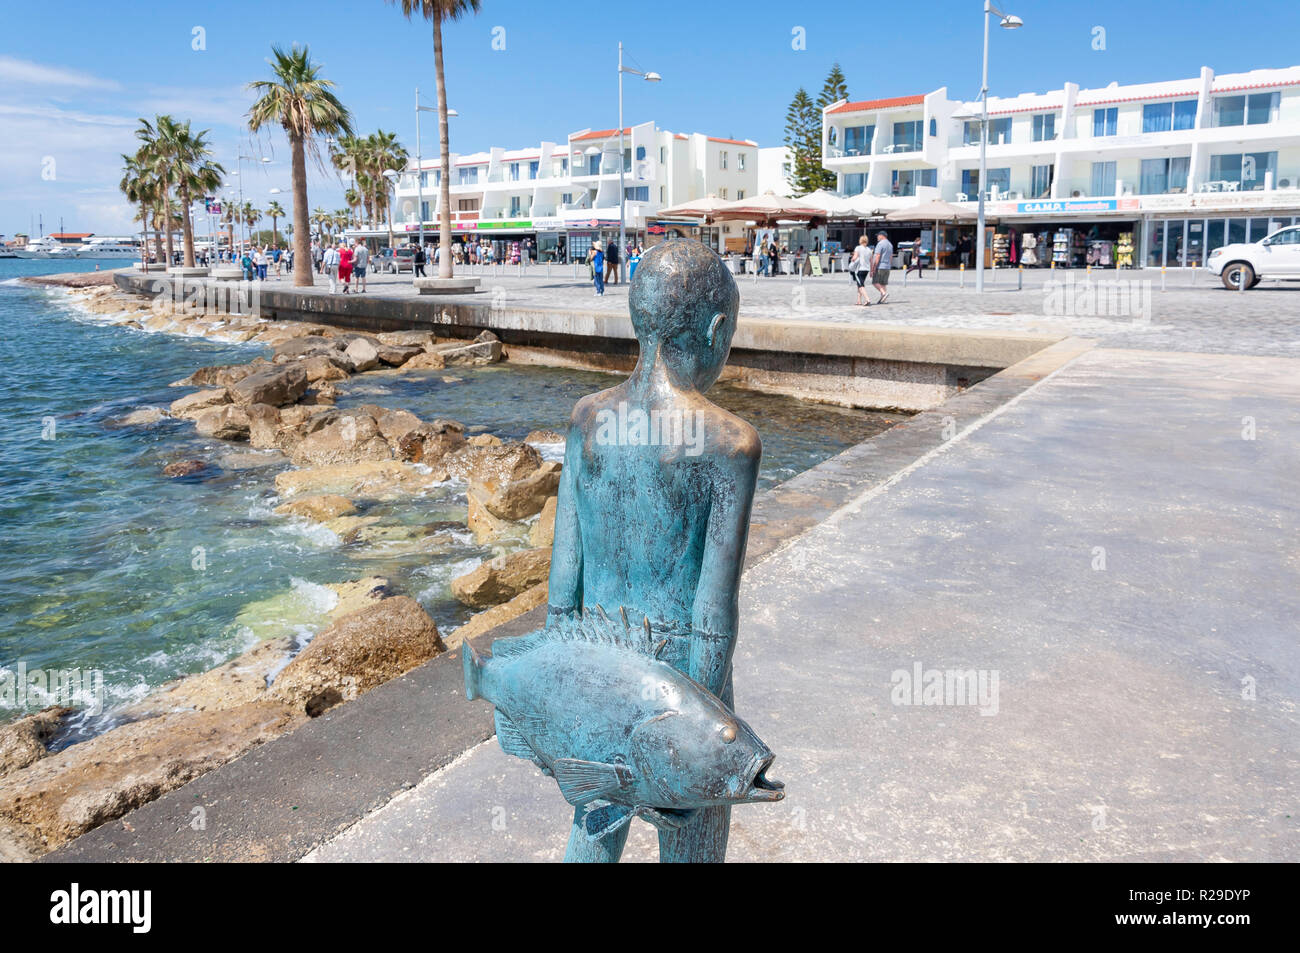 El pequeño pescador" escultura en bronce de un joven con pescado, puerto de Paphos, Paphos (Pafos), Distrito de Pafos, República de Chipre Foto de stock